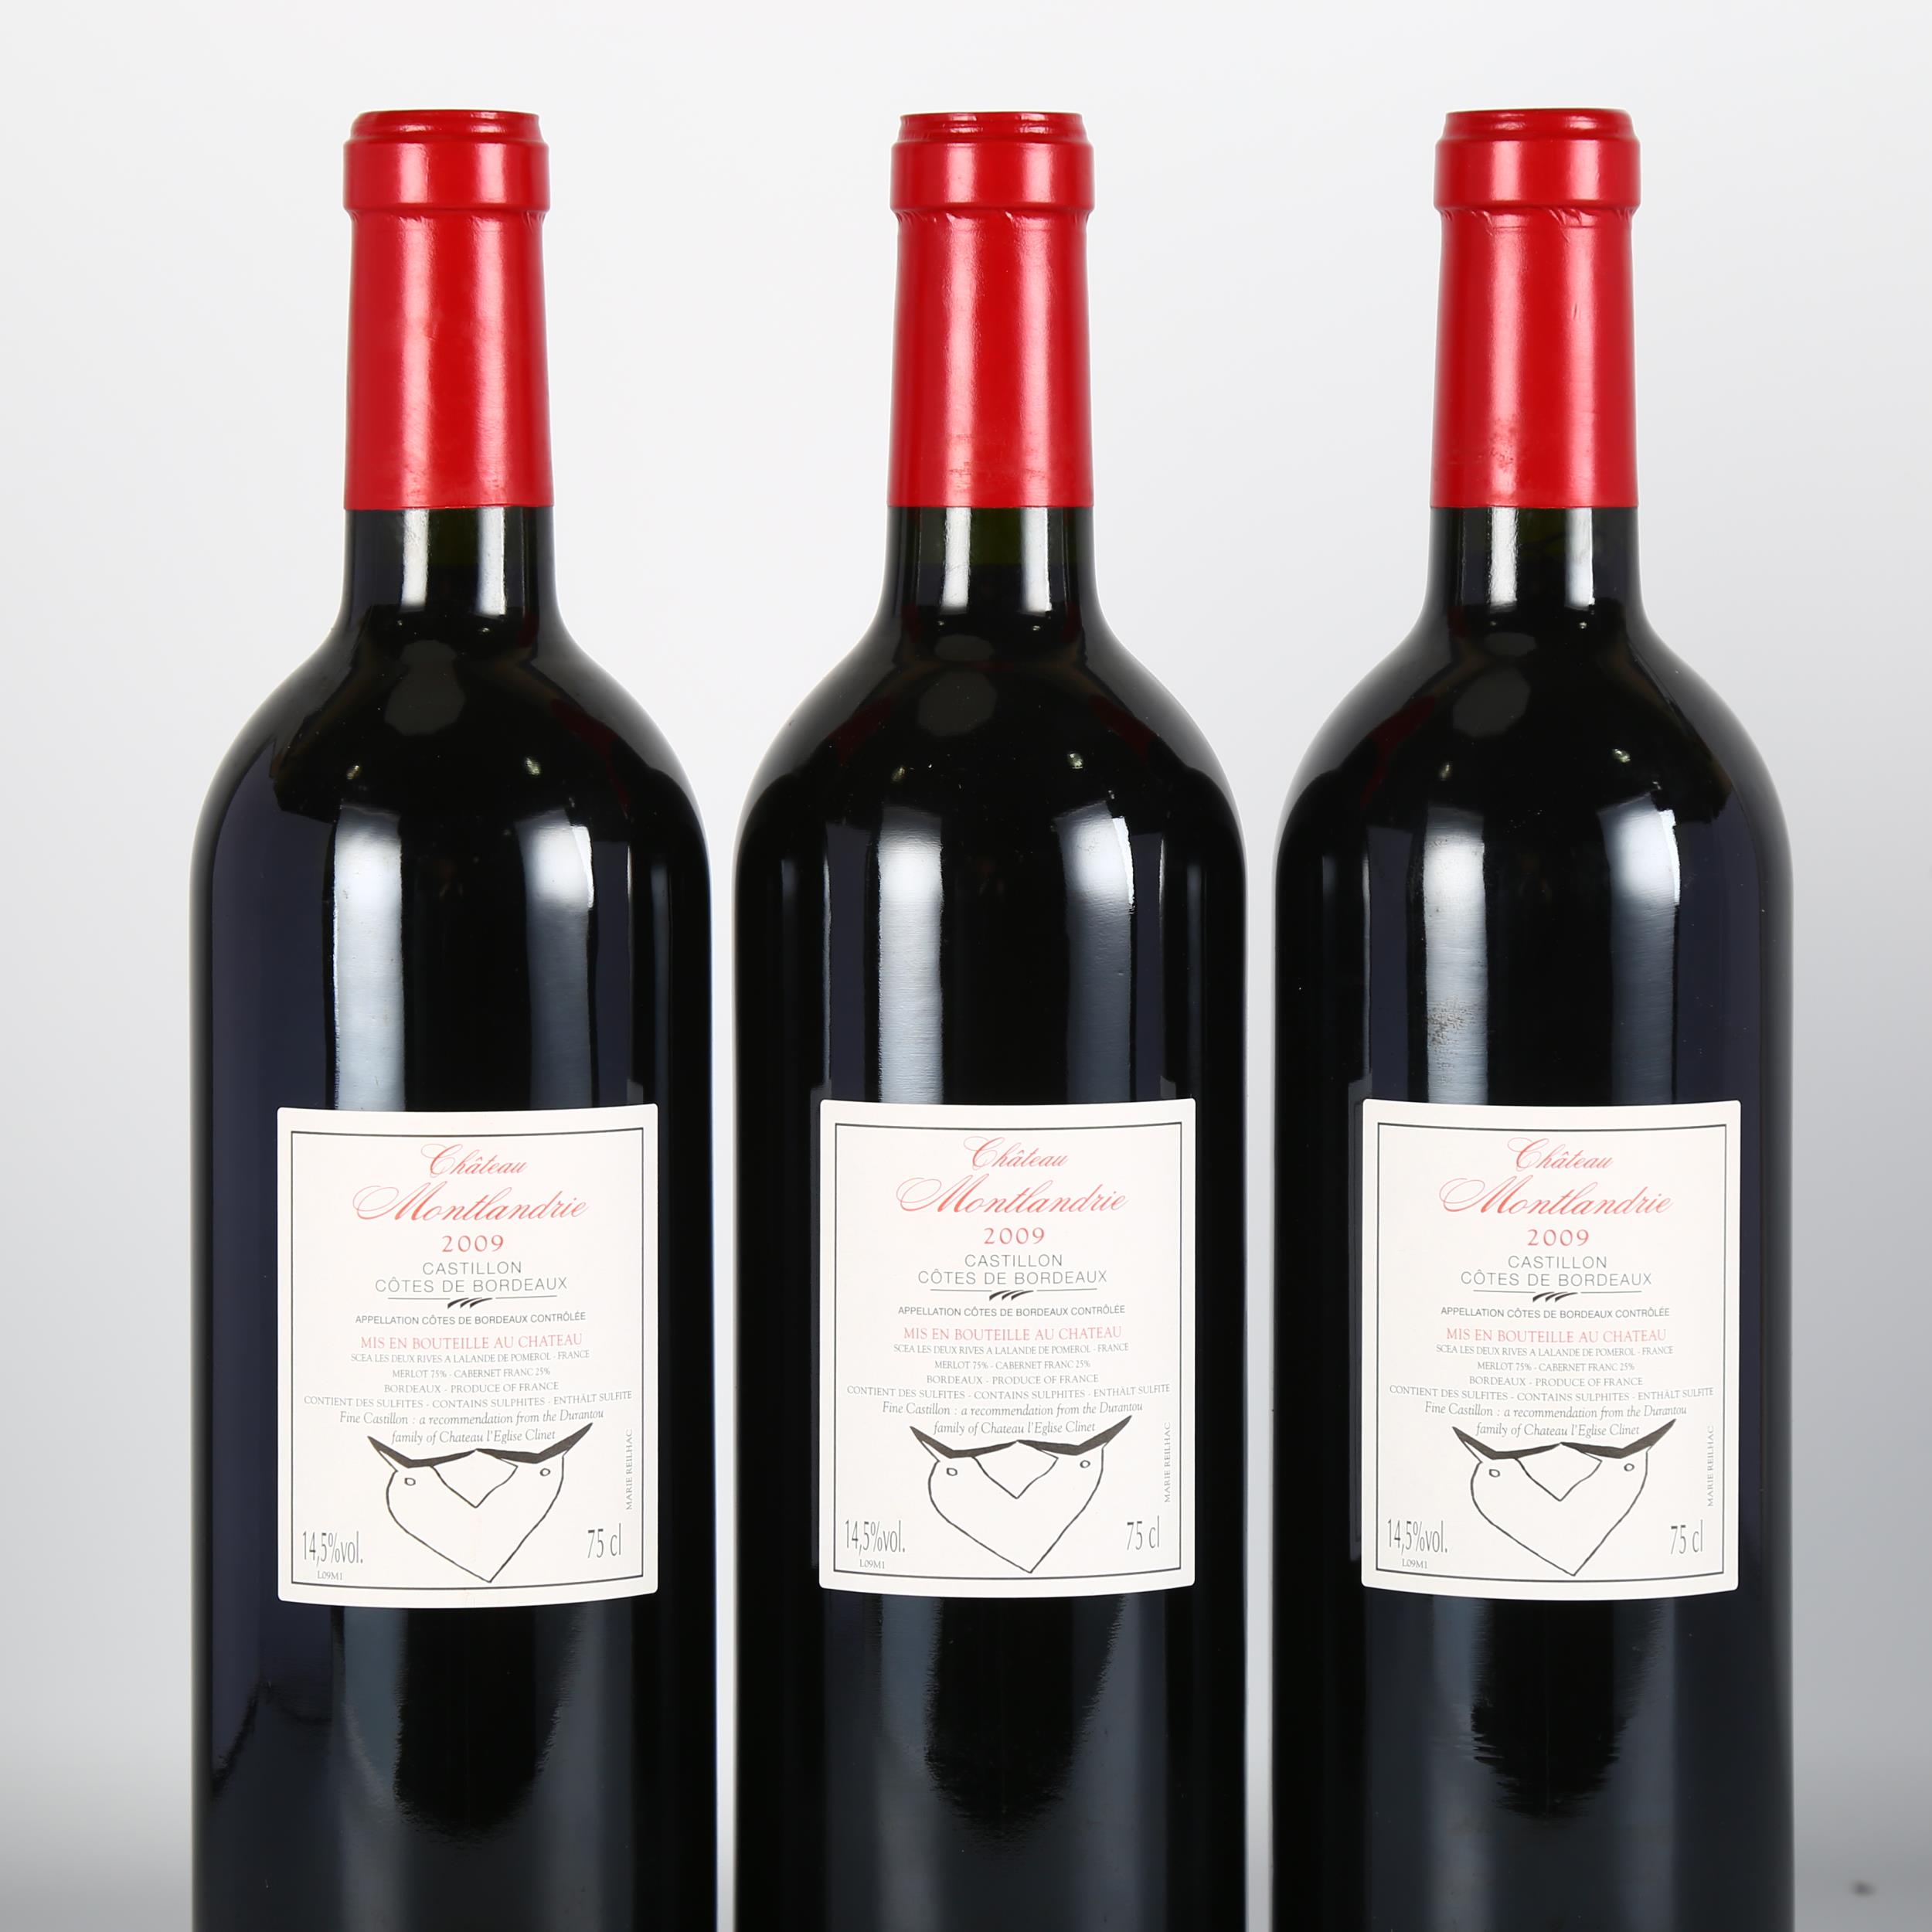 Chateau Montlandrie 2009, Castillon Cotes de Bordeaux x 3 bottles. 93 points Vinous. Bordeaux red - Image 3 of 3